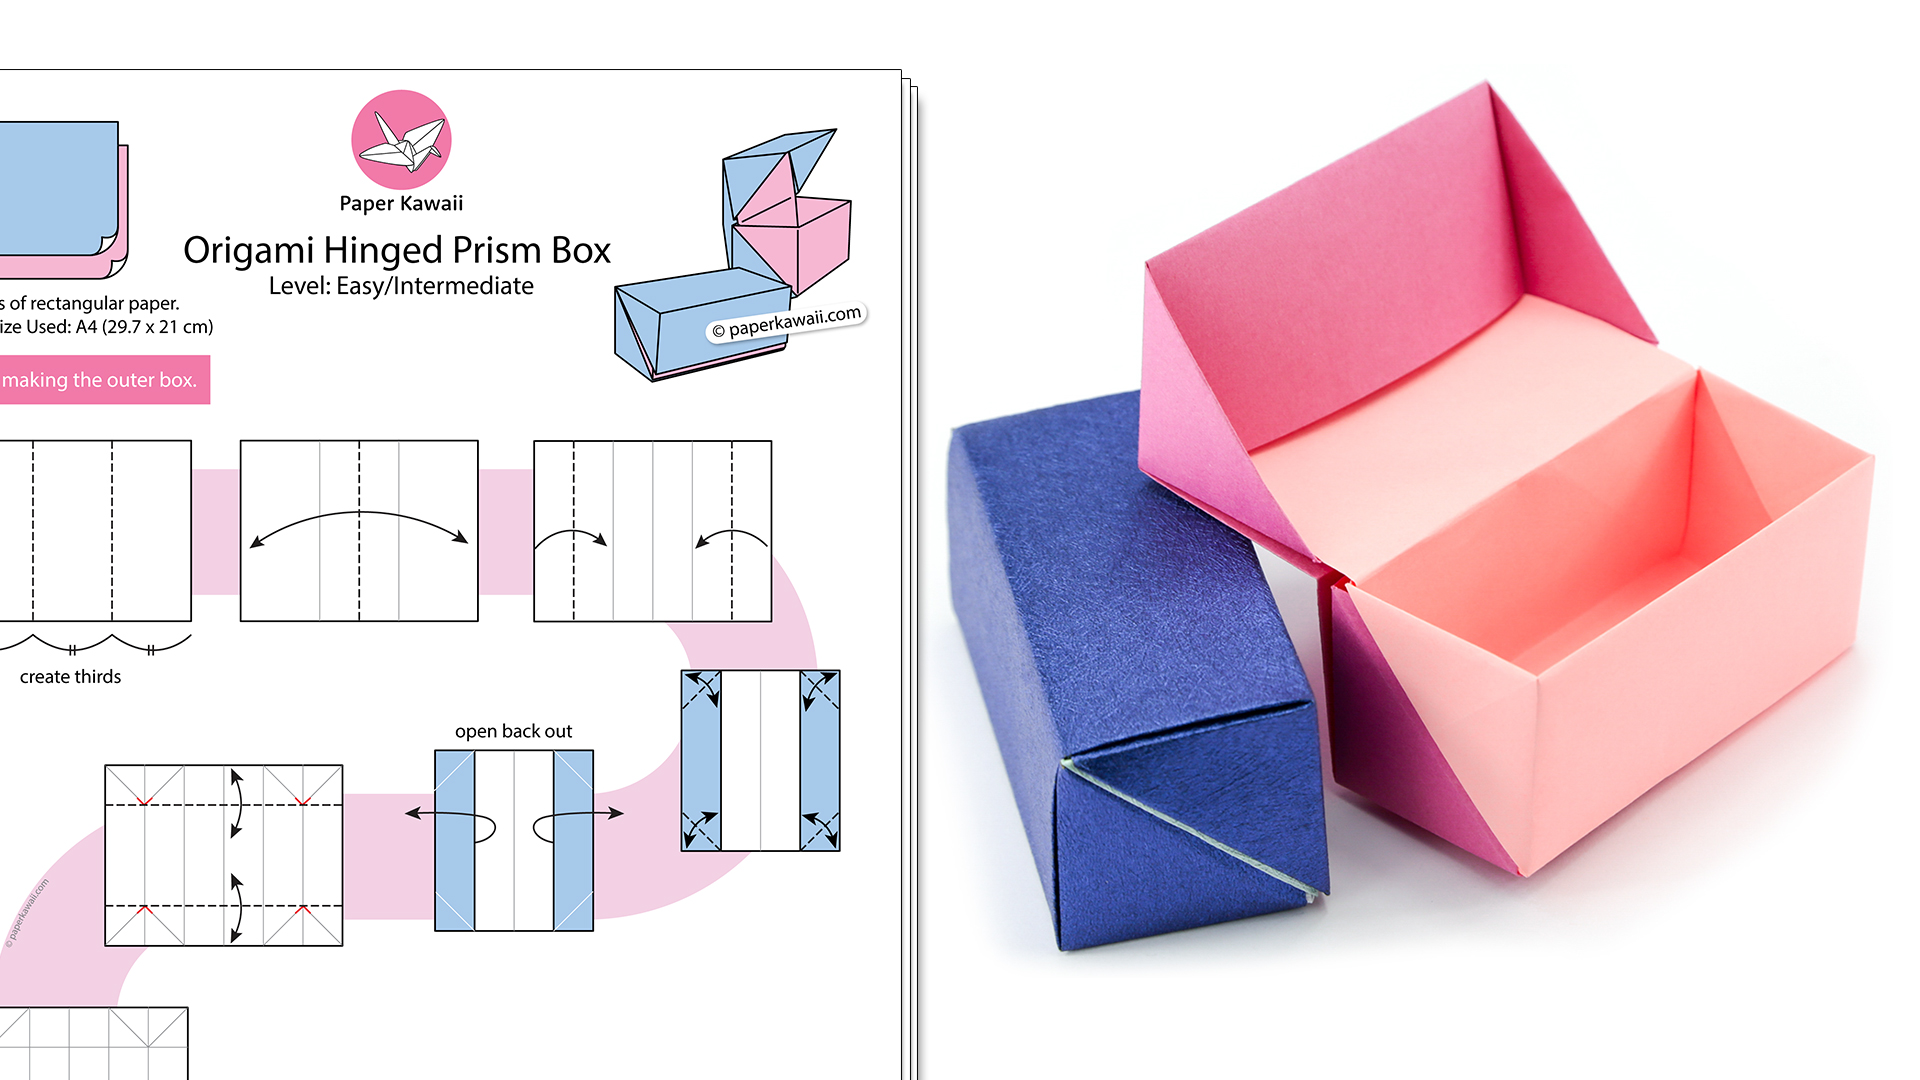 Оригами из бумаги коробочка с крышкой